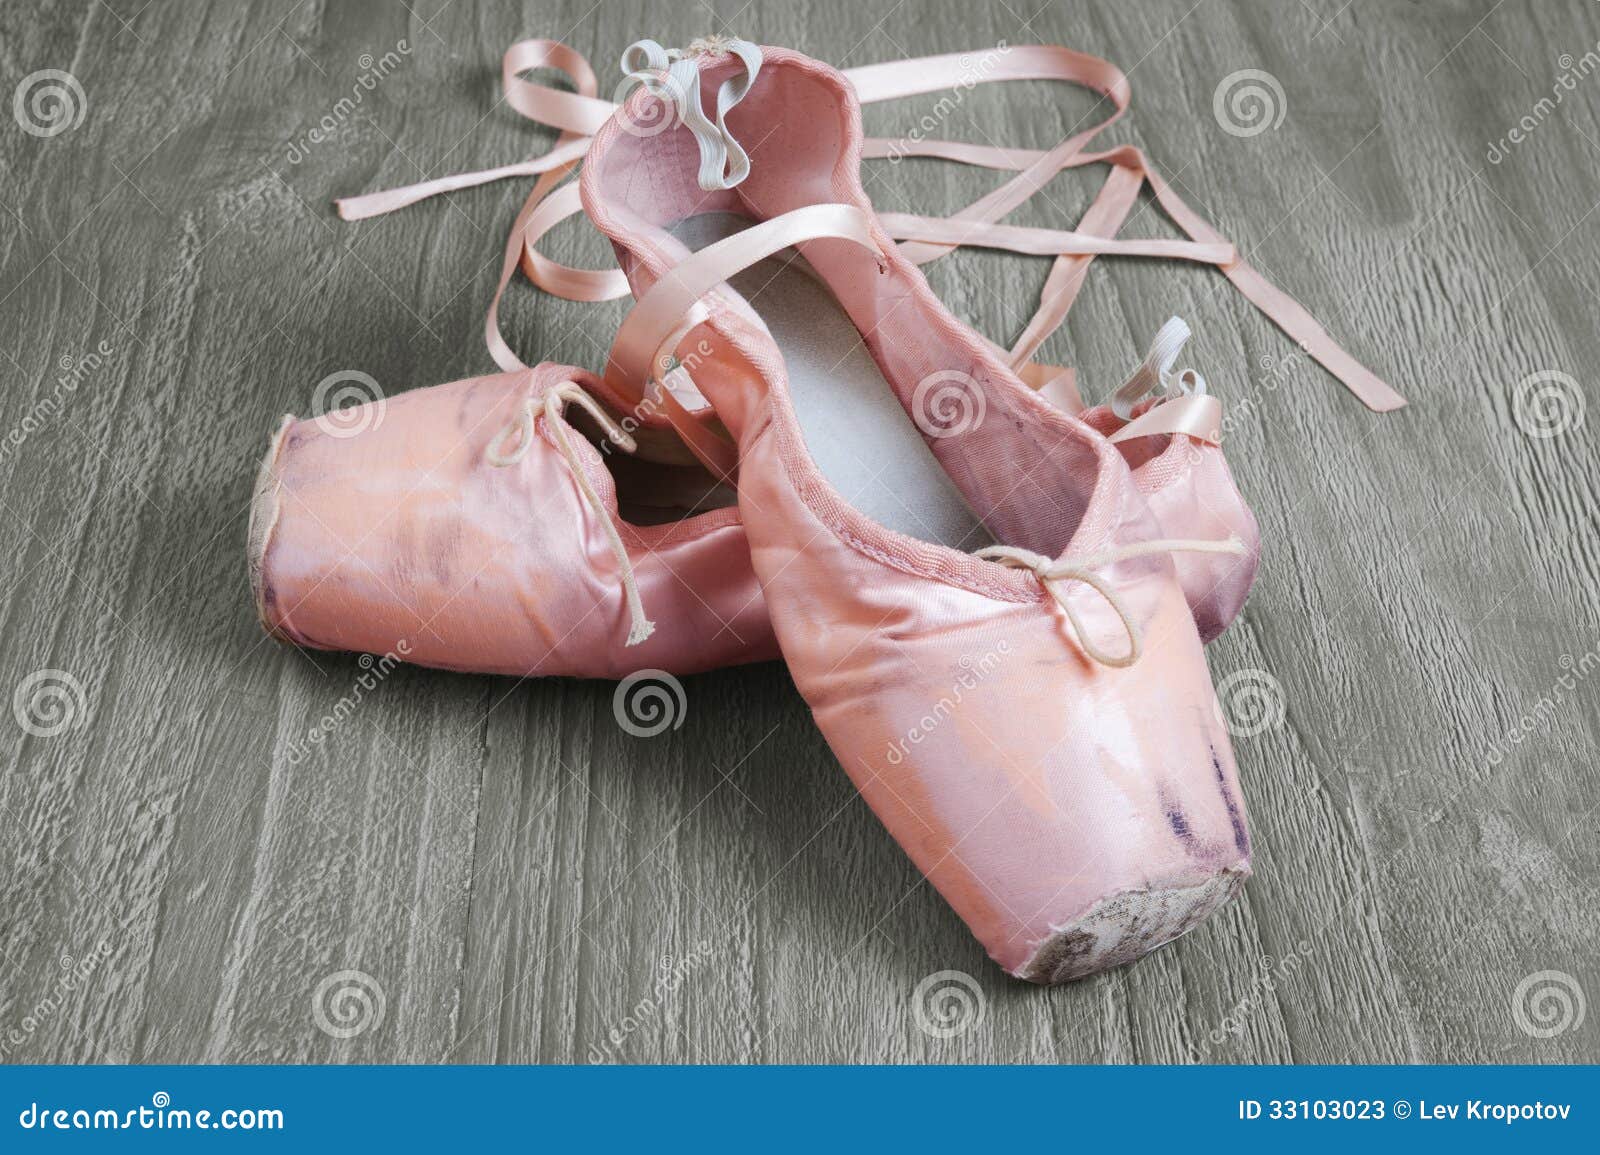 高帮舞蹈鞋成人儿童芭蕾舞鞋平底高帮舞蹈鞋女软底练功鞋女舞蹈鞋-阿里巴巴